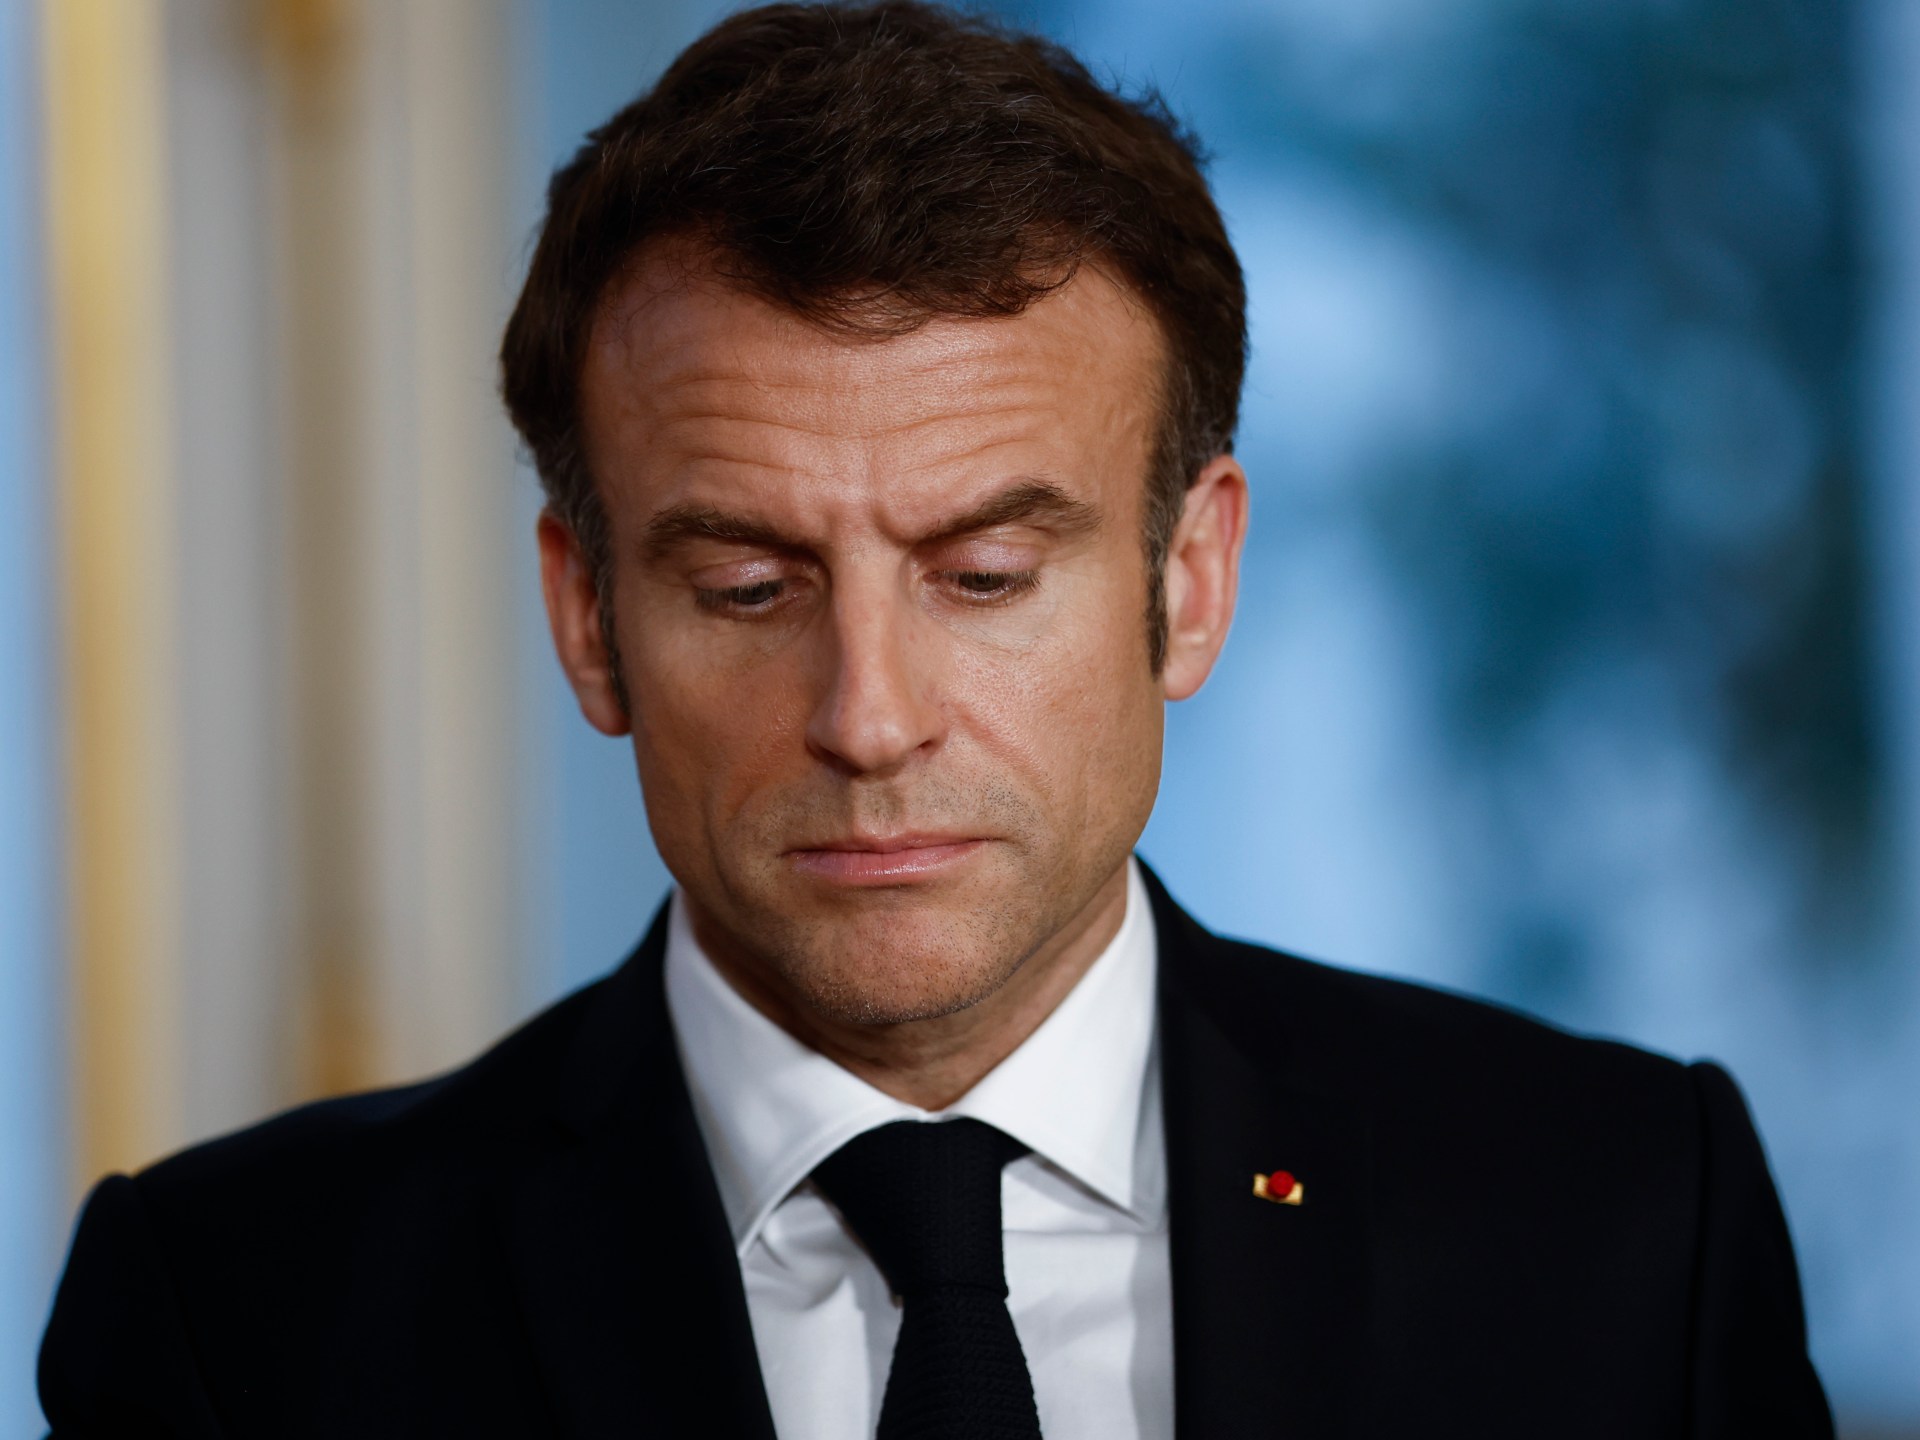 Procès français pour « insulte » à Macron sur Facebook |  Nouvelles de la politique